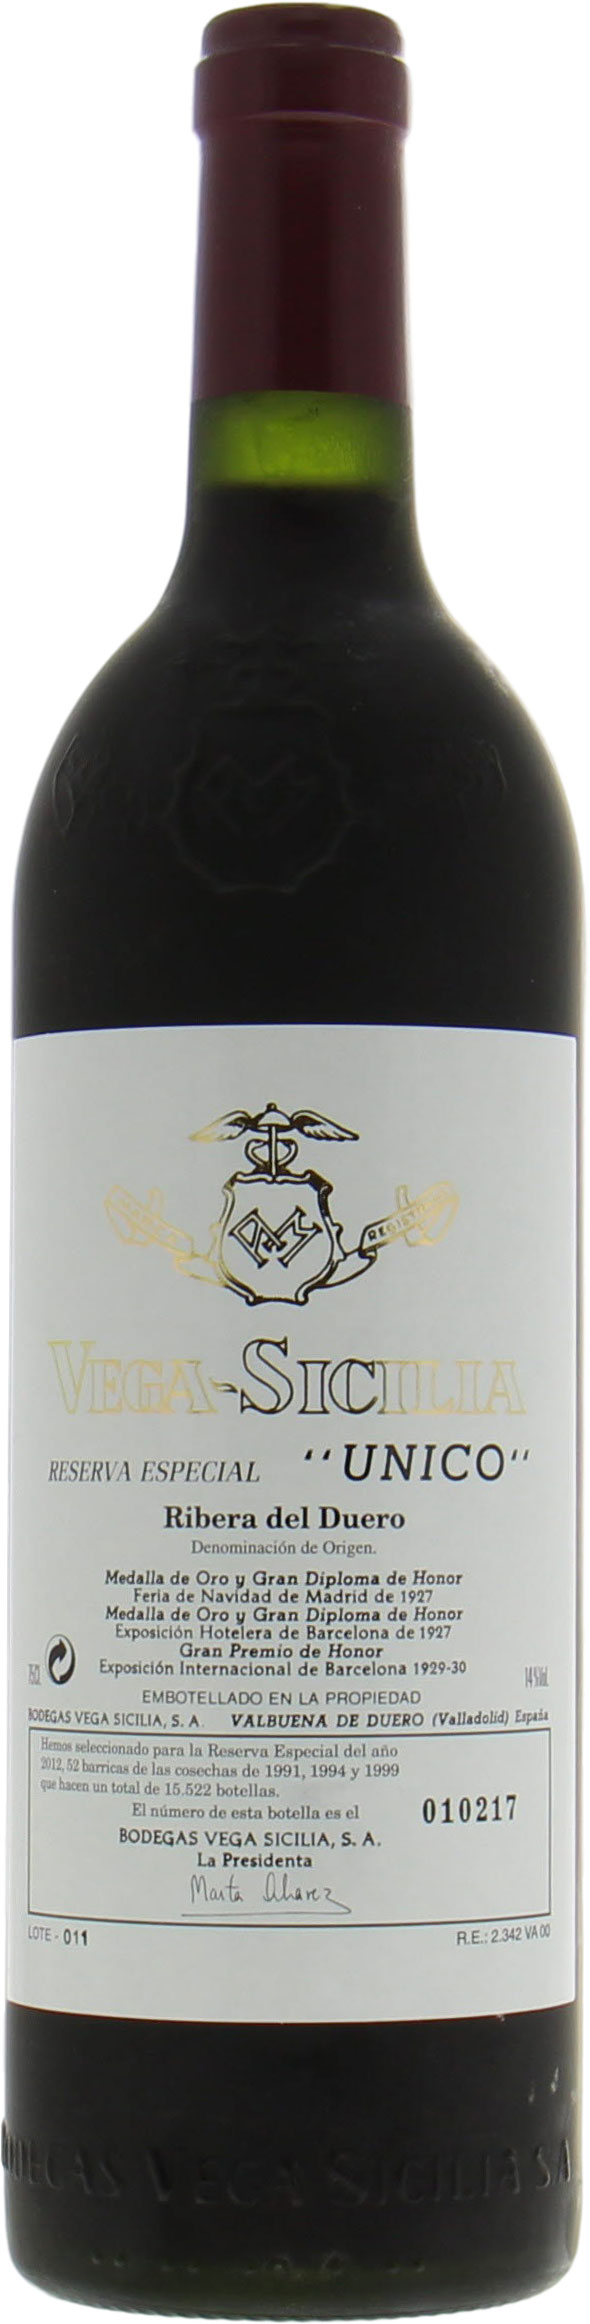 Vega Sicilia - Reserva Especiale release 2012 (91, 94, 99) 2012